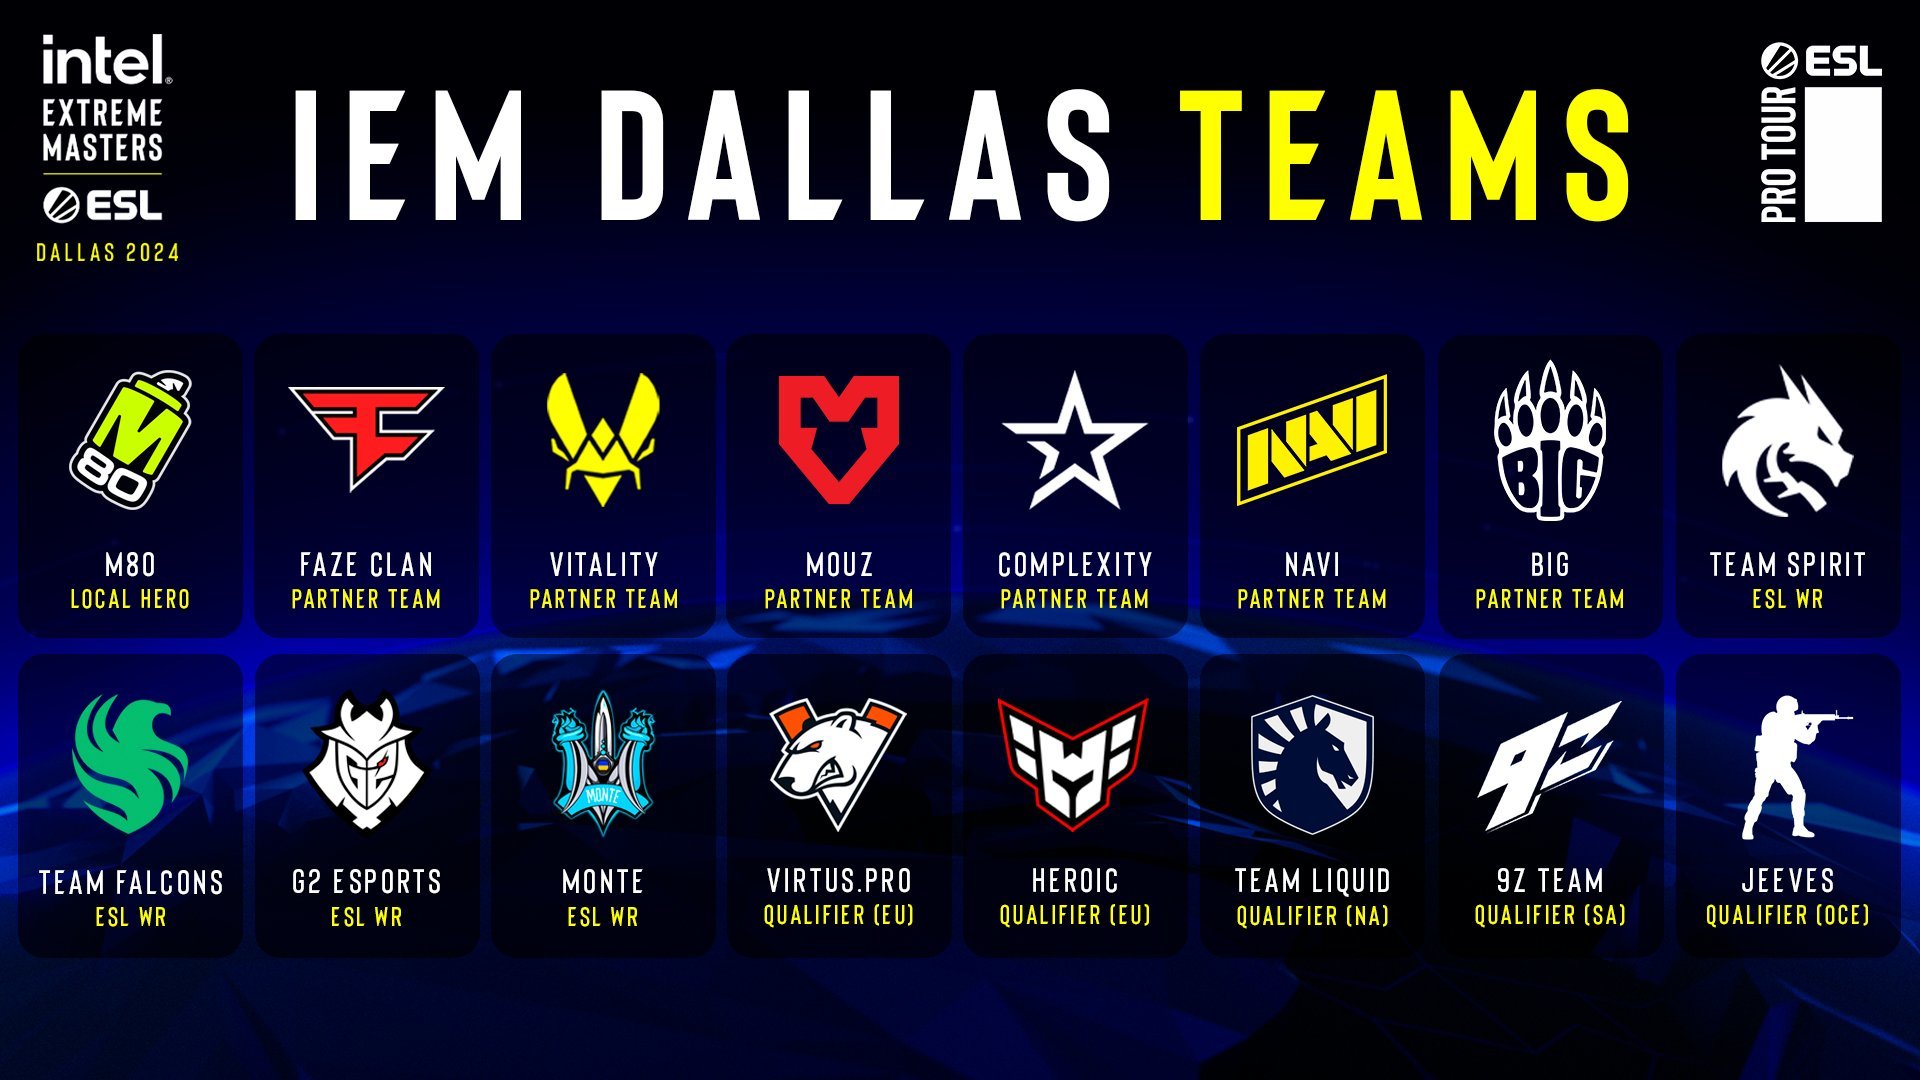 Éstos son los equipos que se han clasificado para el IEM Dallas 2024